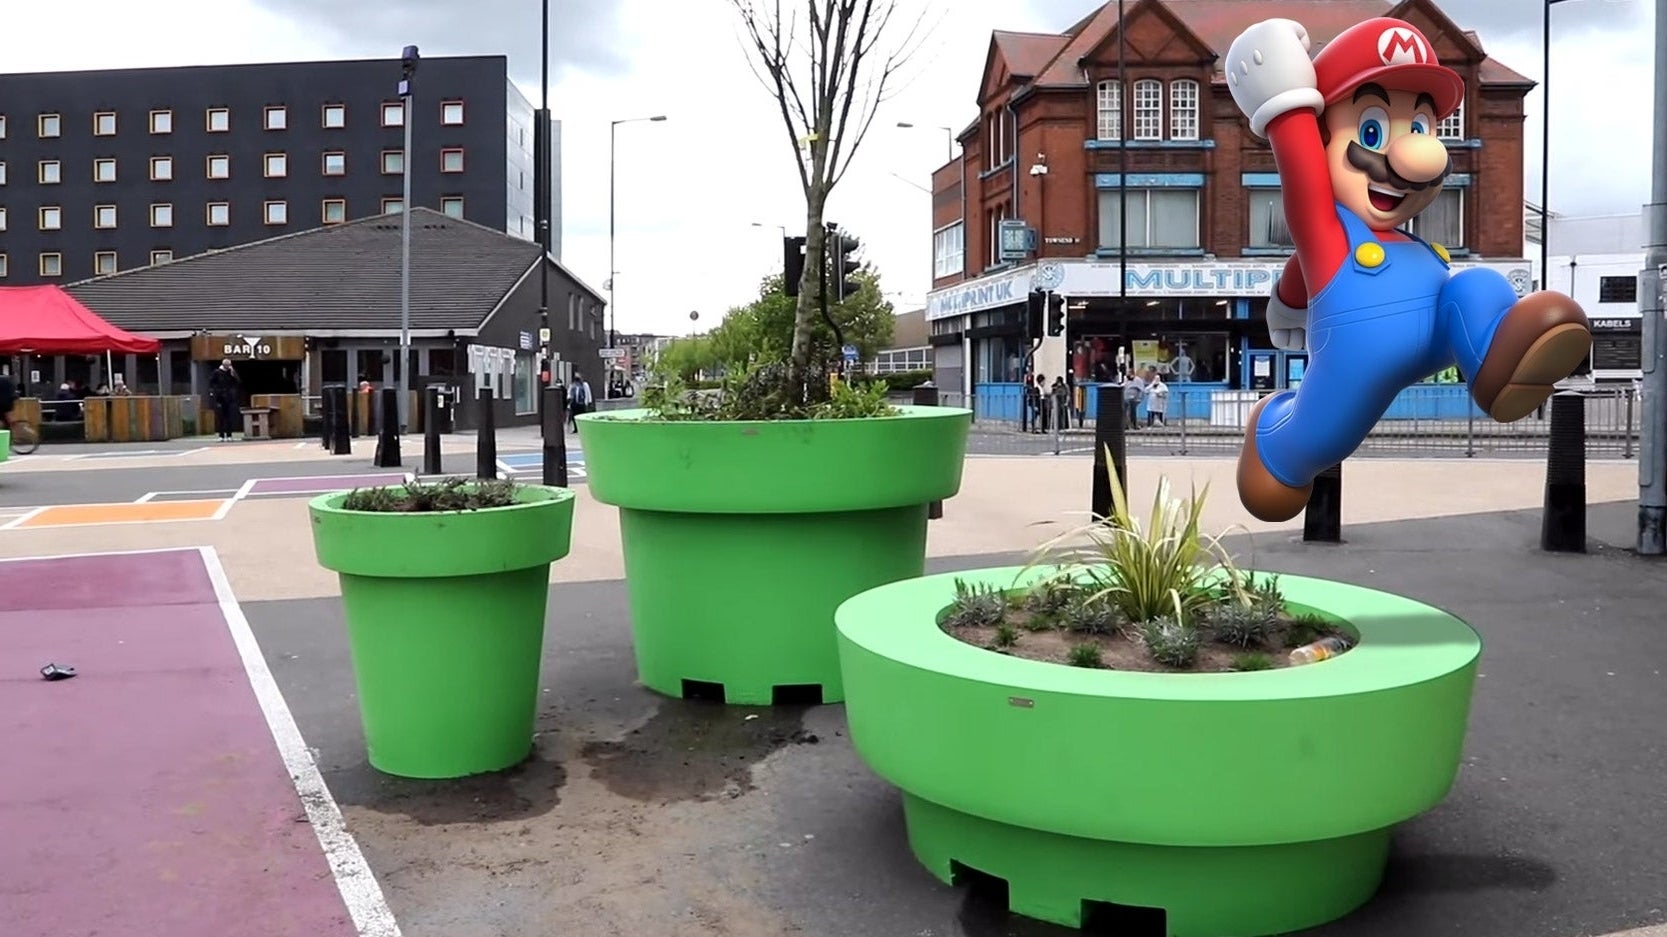 Immagine di Super Mario invade un comune inglese con dei giganteschi vasi/tubi verdi...odiati dai cittadini